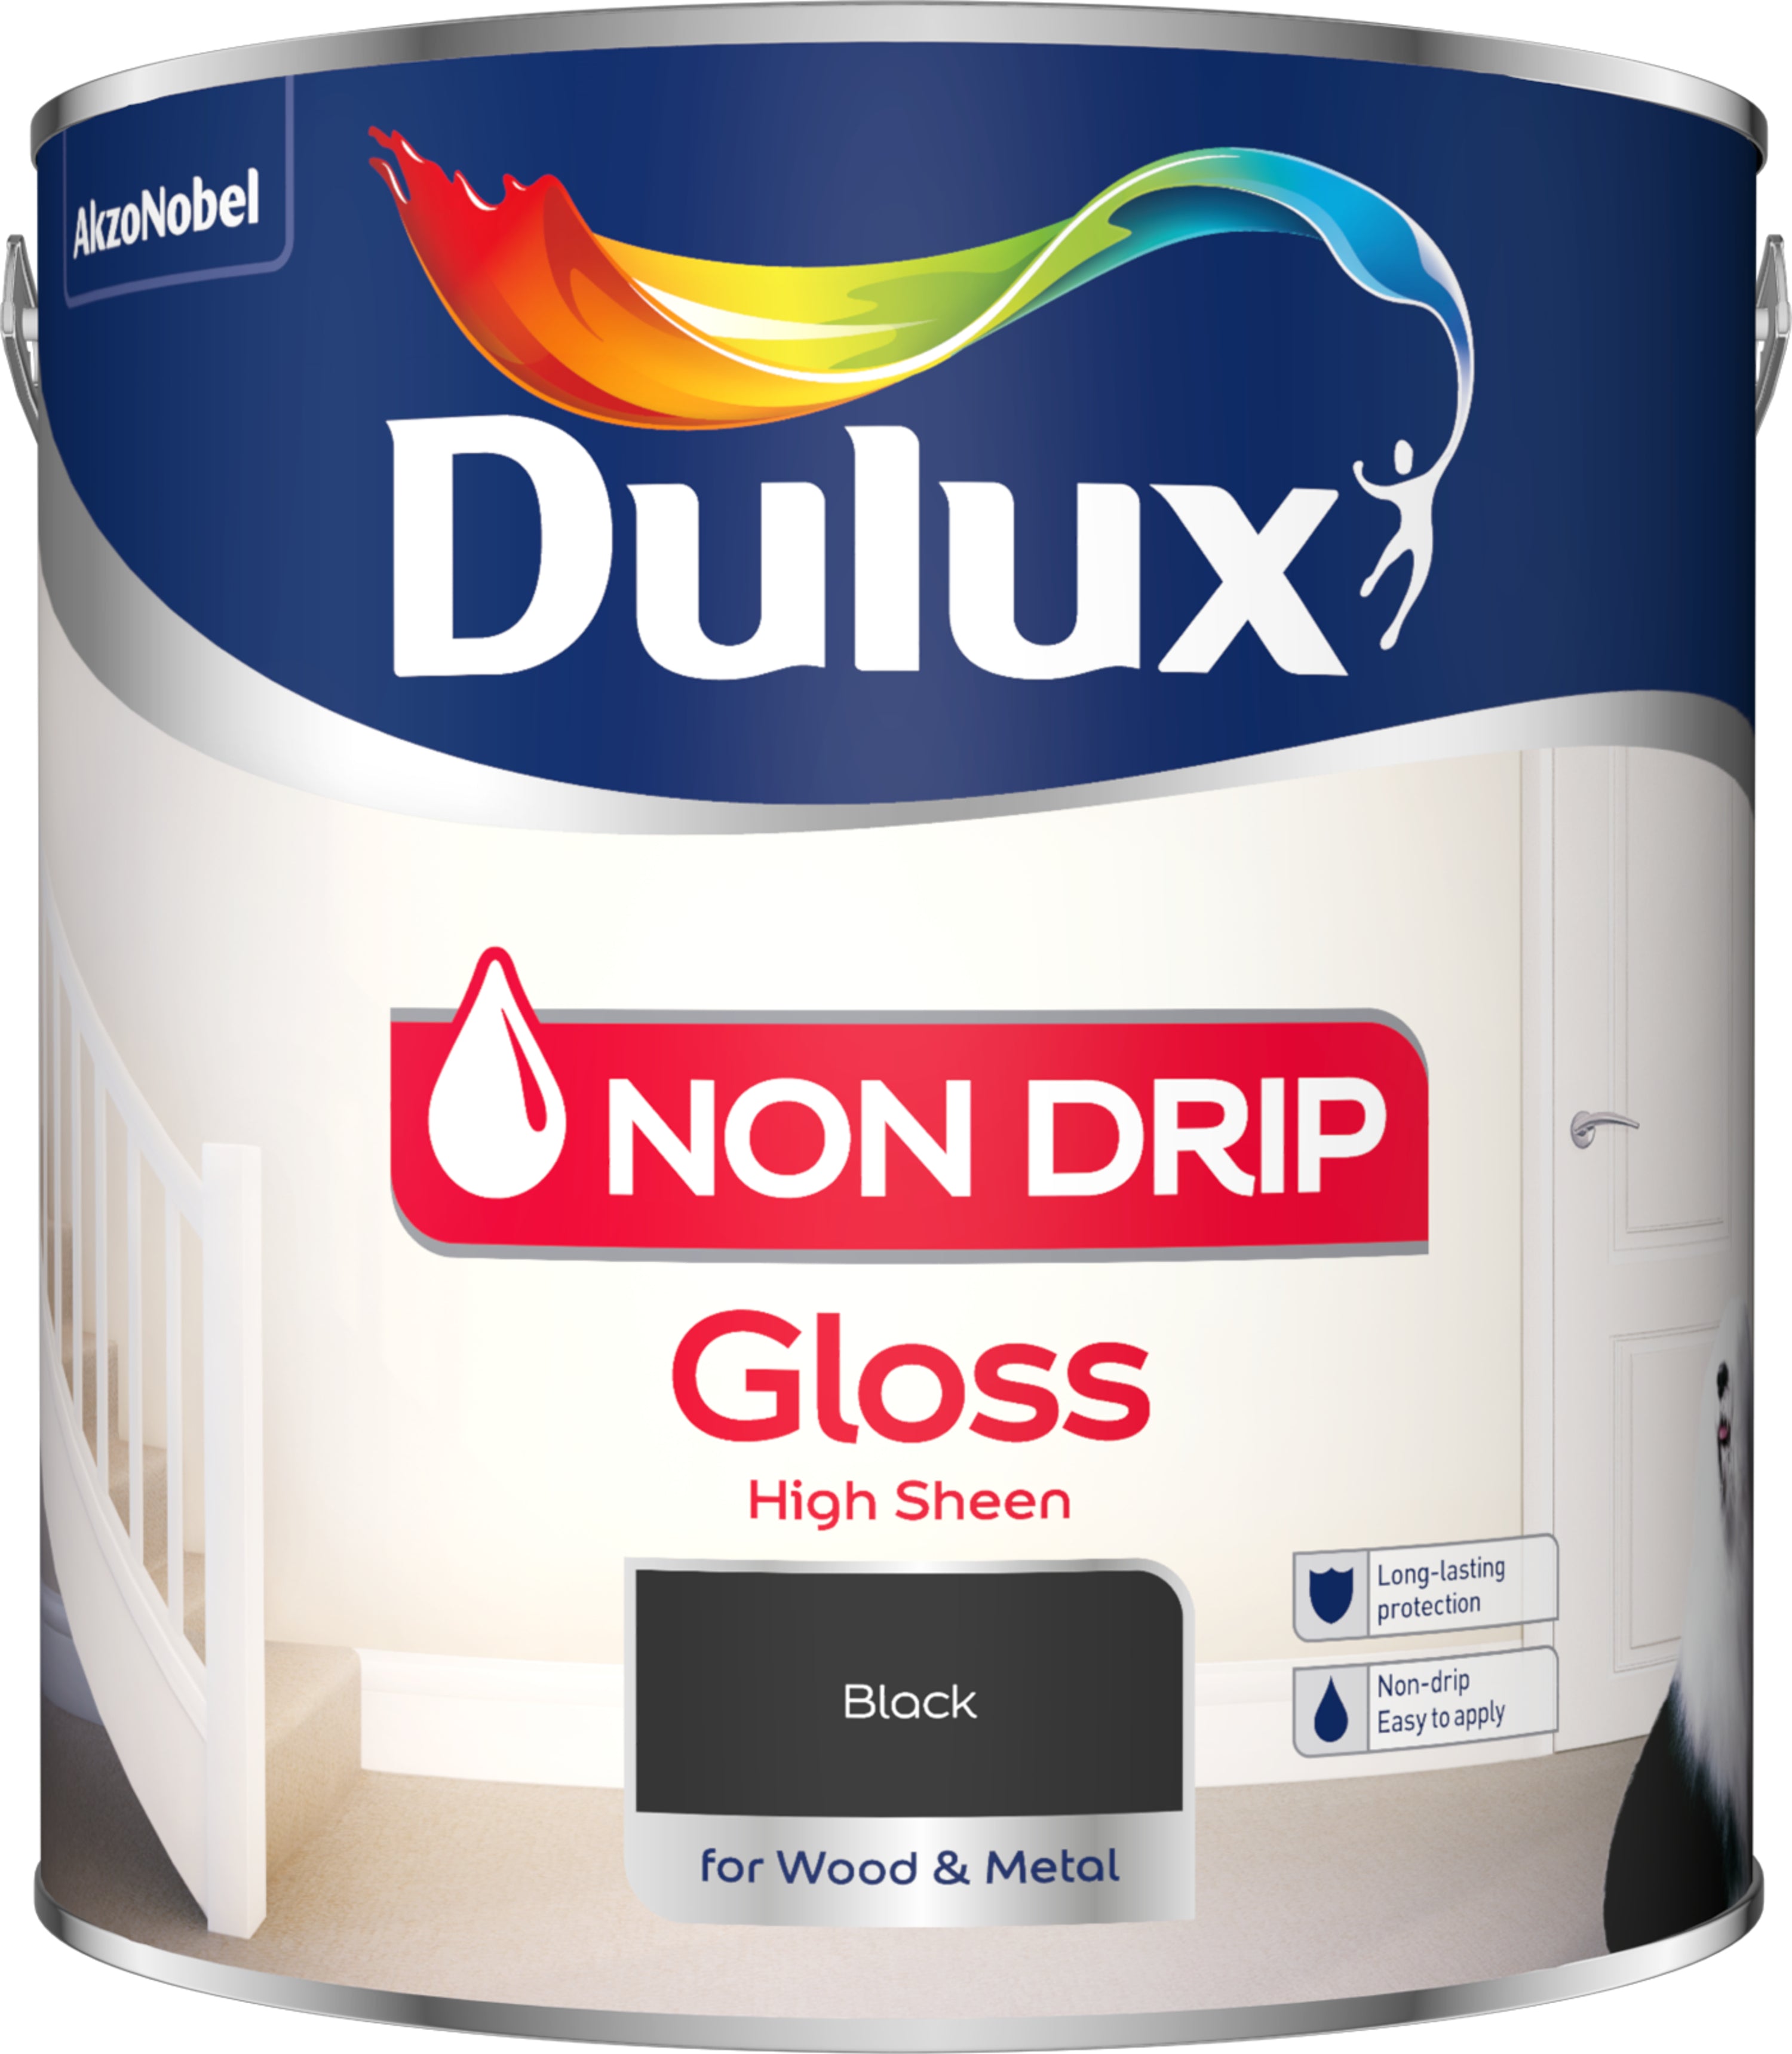 Dulux Non Drip Gloss Black 2.5L